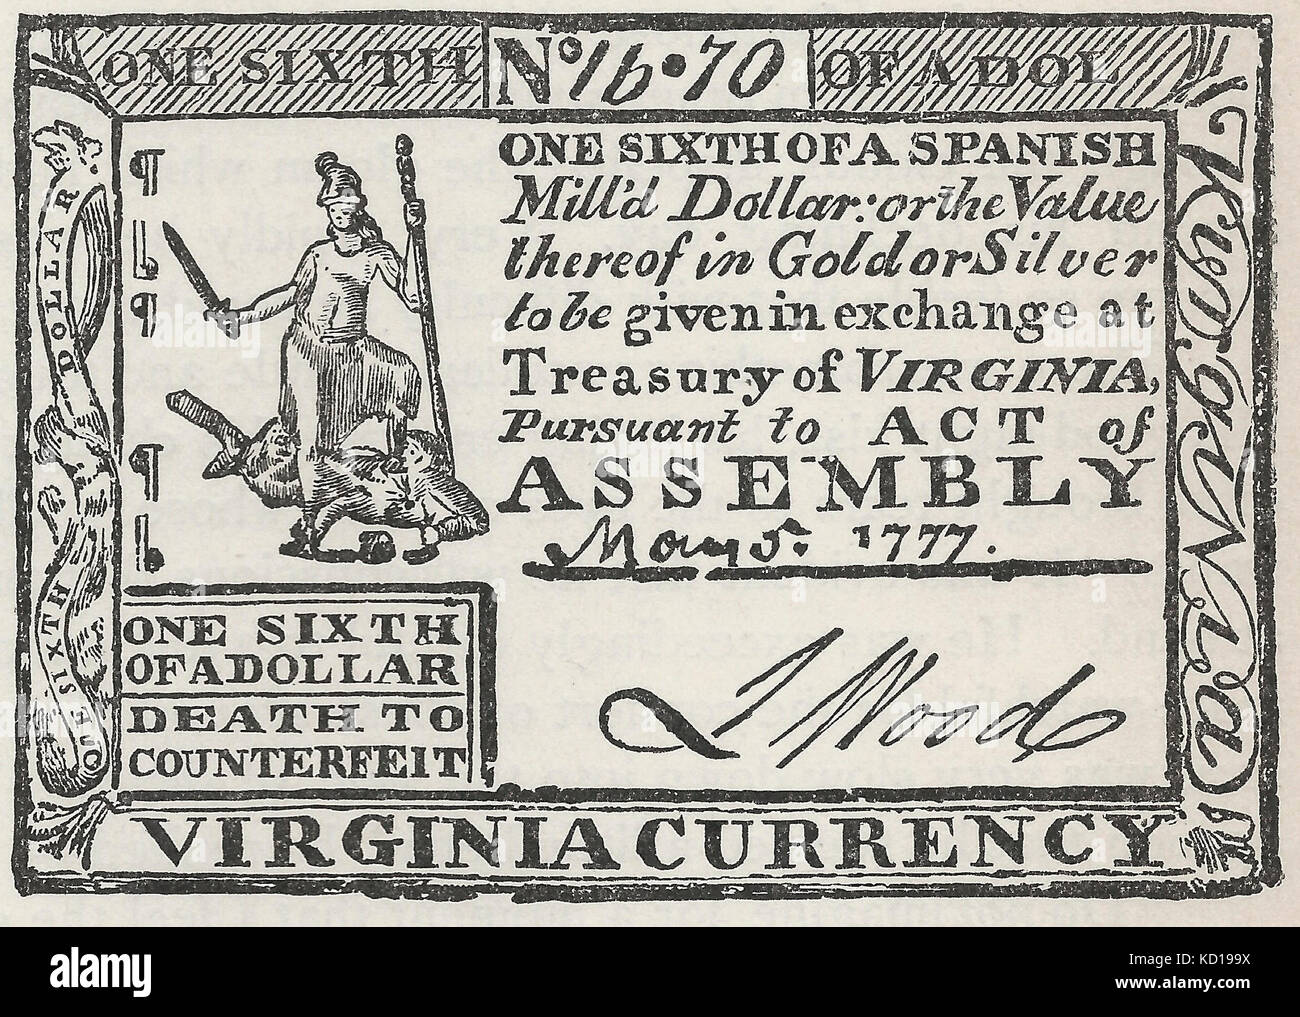 État de Virginie Service au moment de la Révolution américaine, un sixième d'un dollar, 1777 Banque D'Images